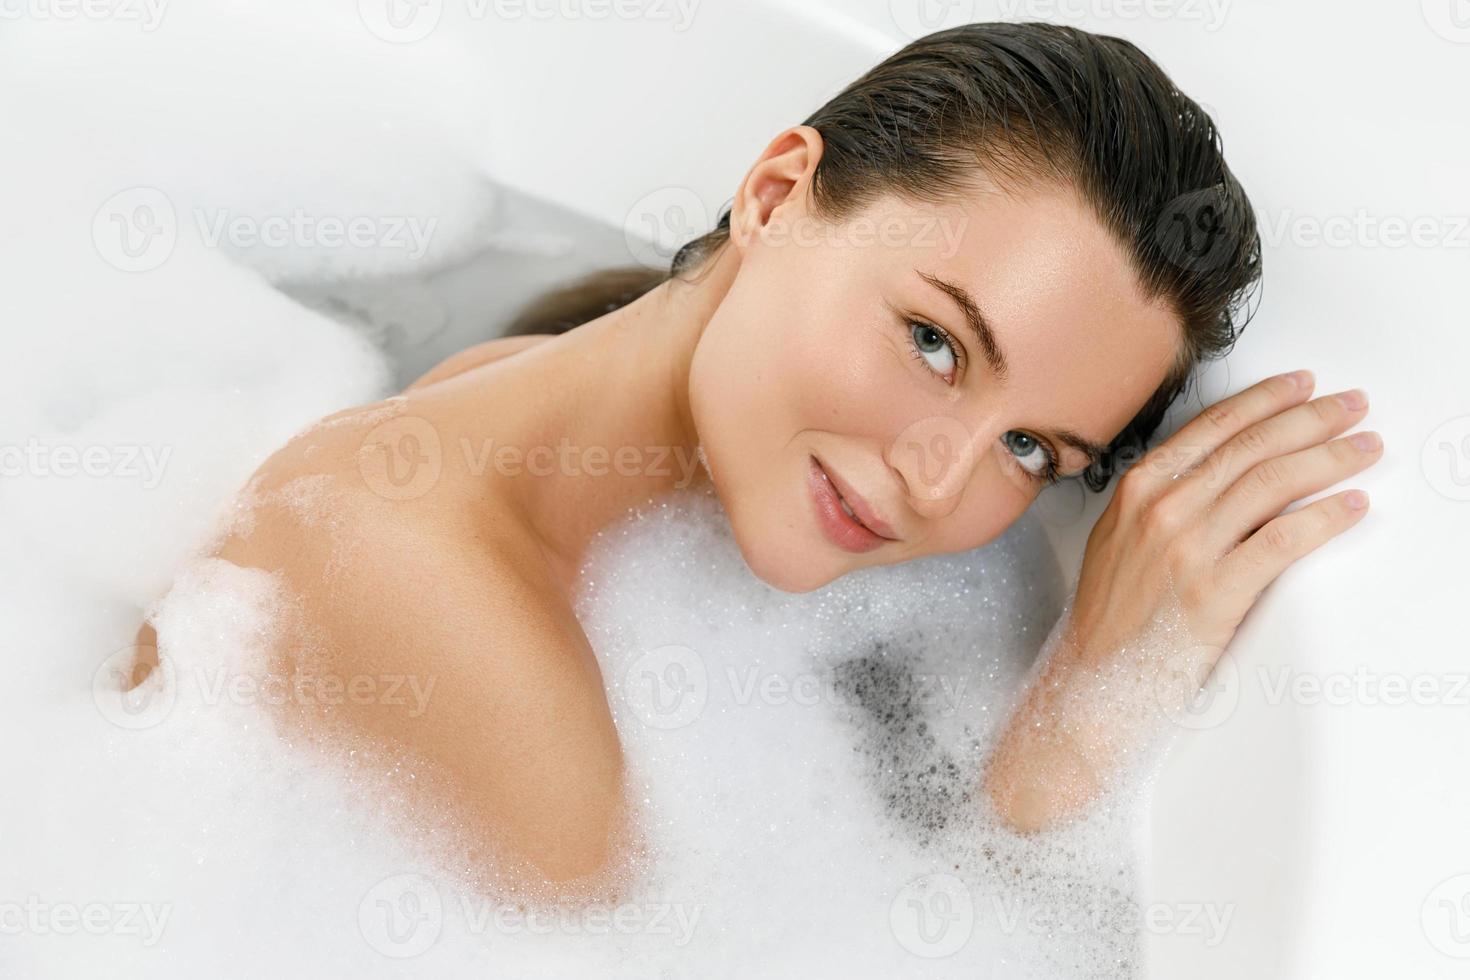 jovem está tomando banho com prazer foto